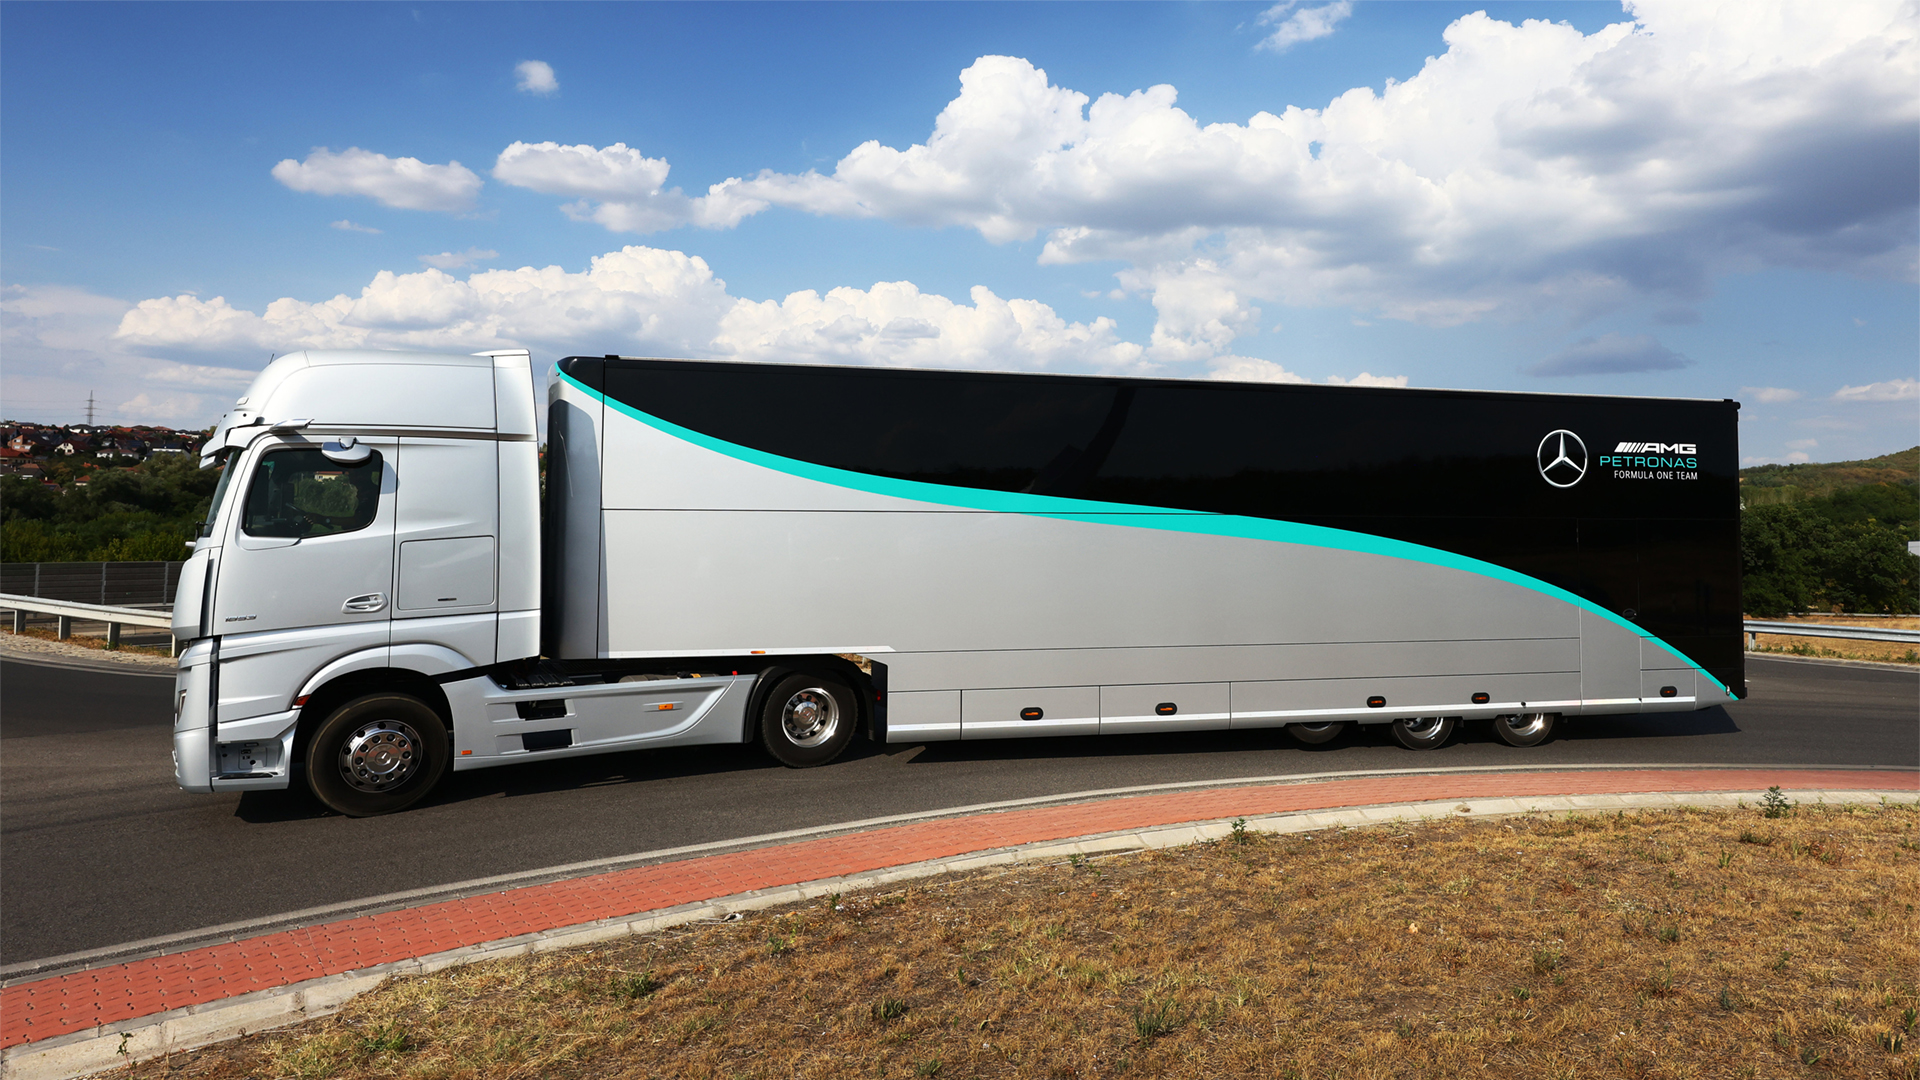 16 truk tim AMG Mercedes Formula 1 berangkat dari Belgia ke Belanda dan dari sana ke Italia, menempuh jarak 1.380 km dengan HVO 100 dan hanya 20 dengan diesel fosil